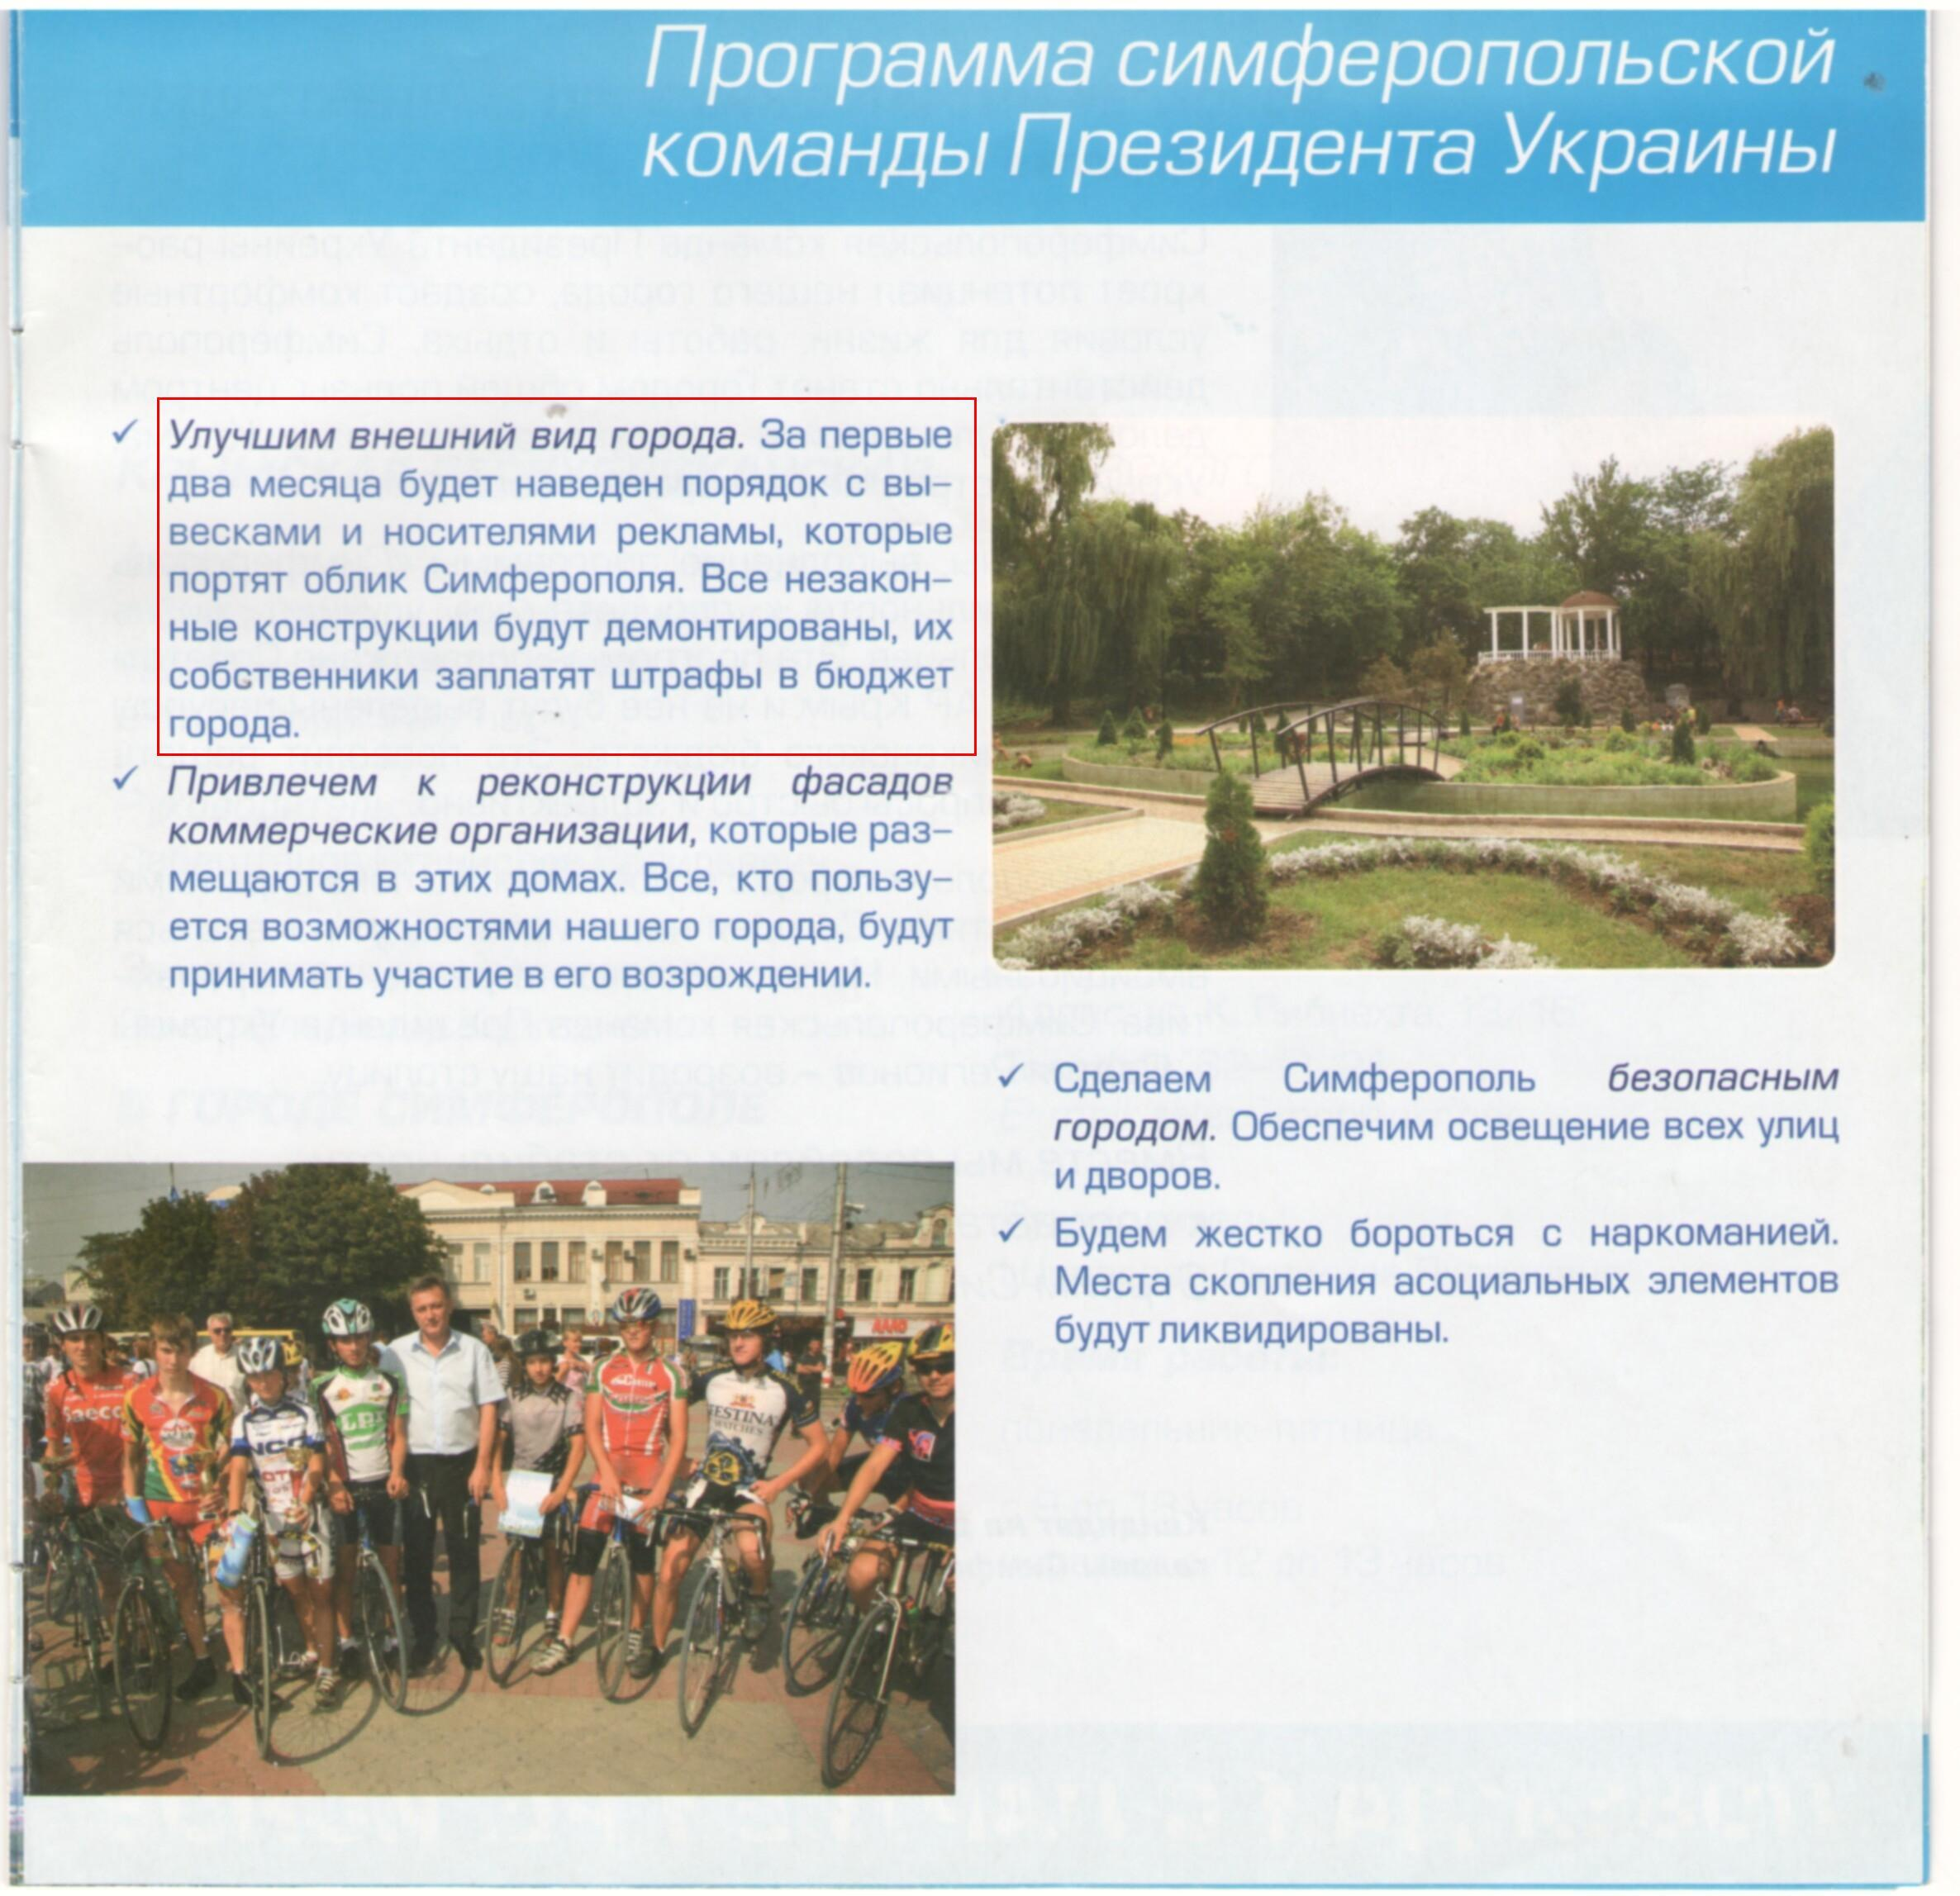 Программа кандидата на пост городского головы Симферополя Виктора Агеева